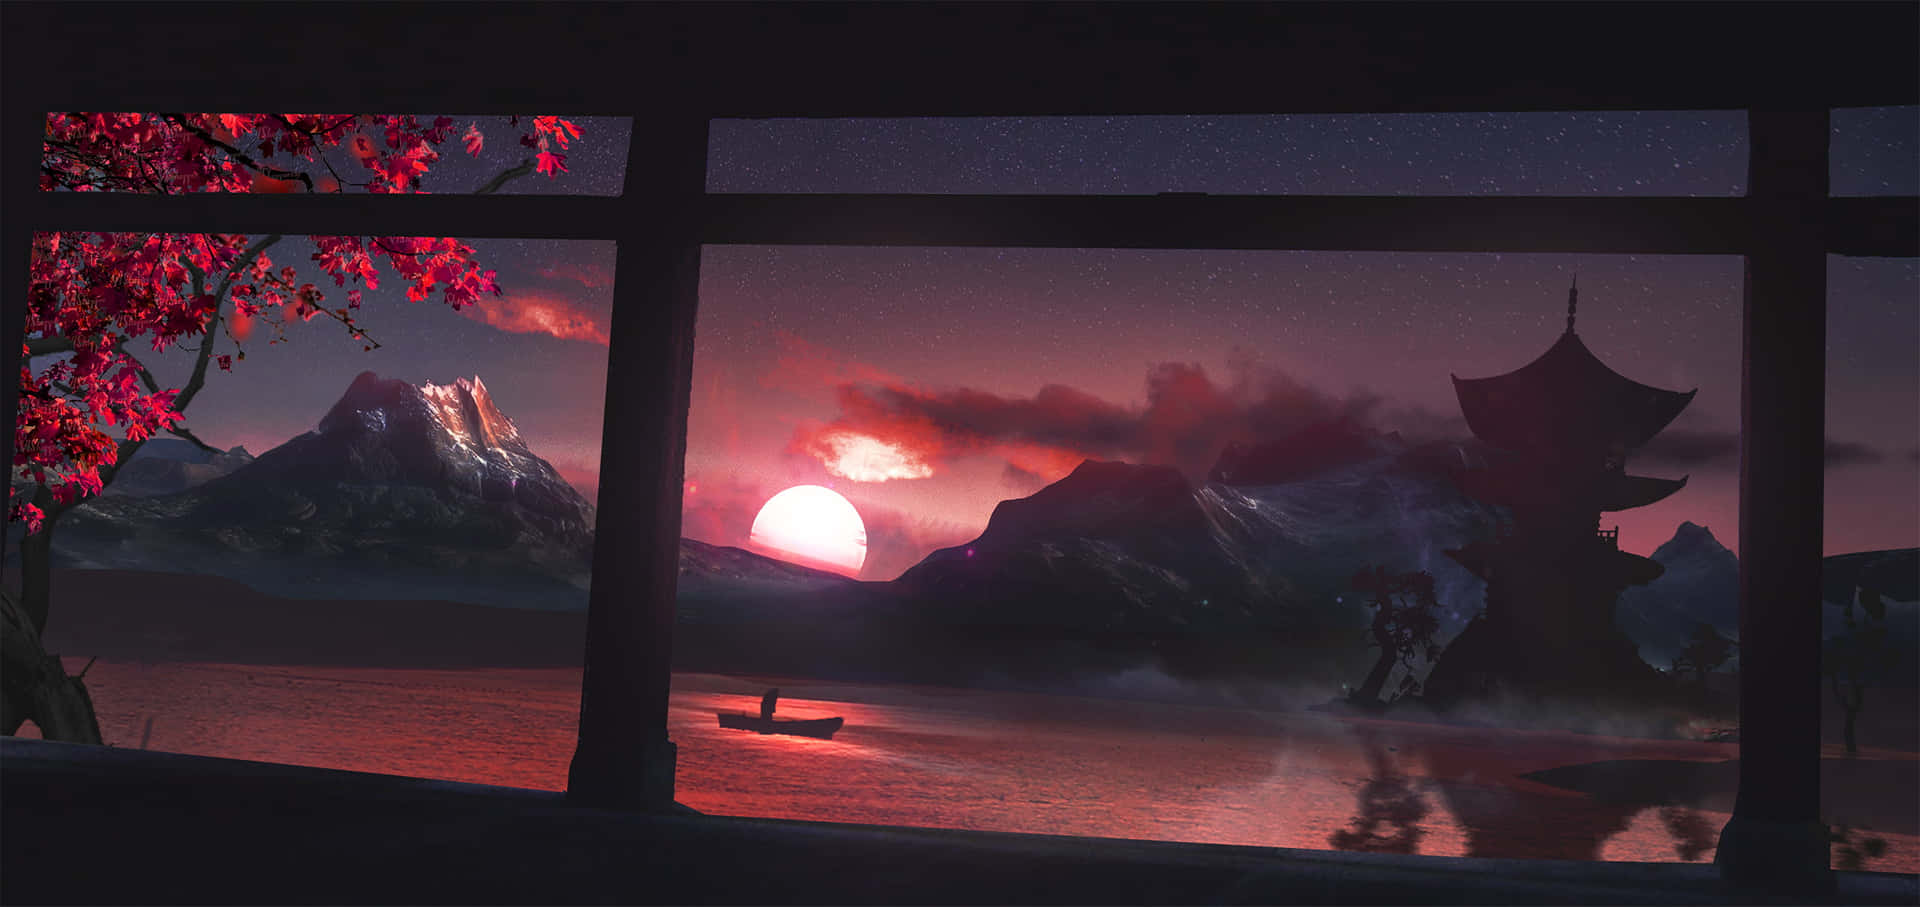 Elsol Se Refleja En Las Montañas Cubiertas De Nieve, Creando Una Puesta De Sol Impresionante. Fondo de pantalla